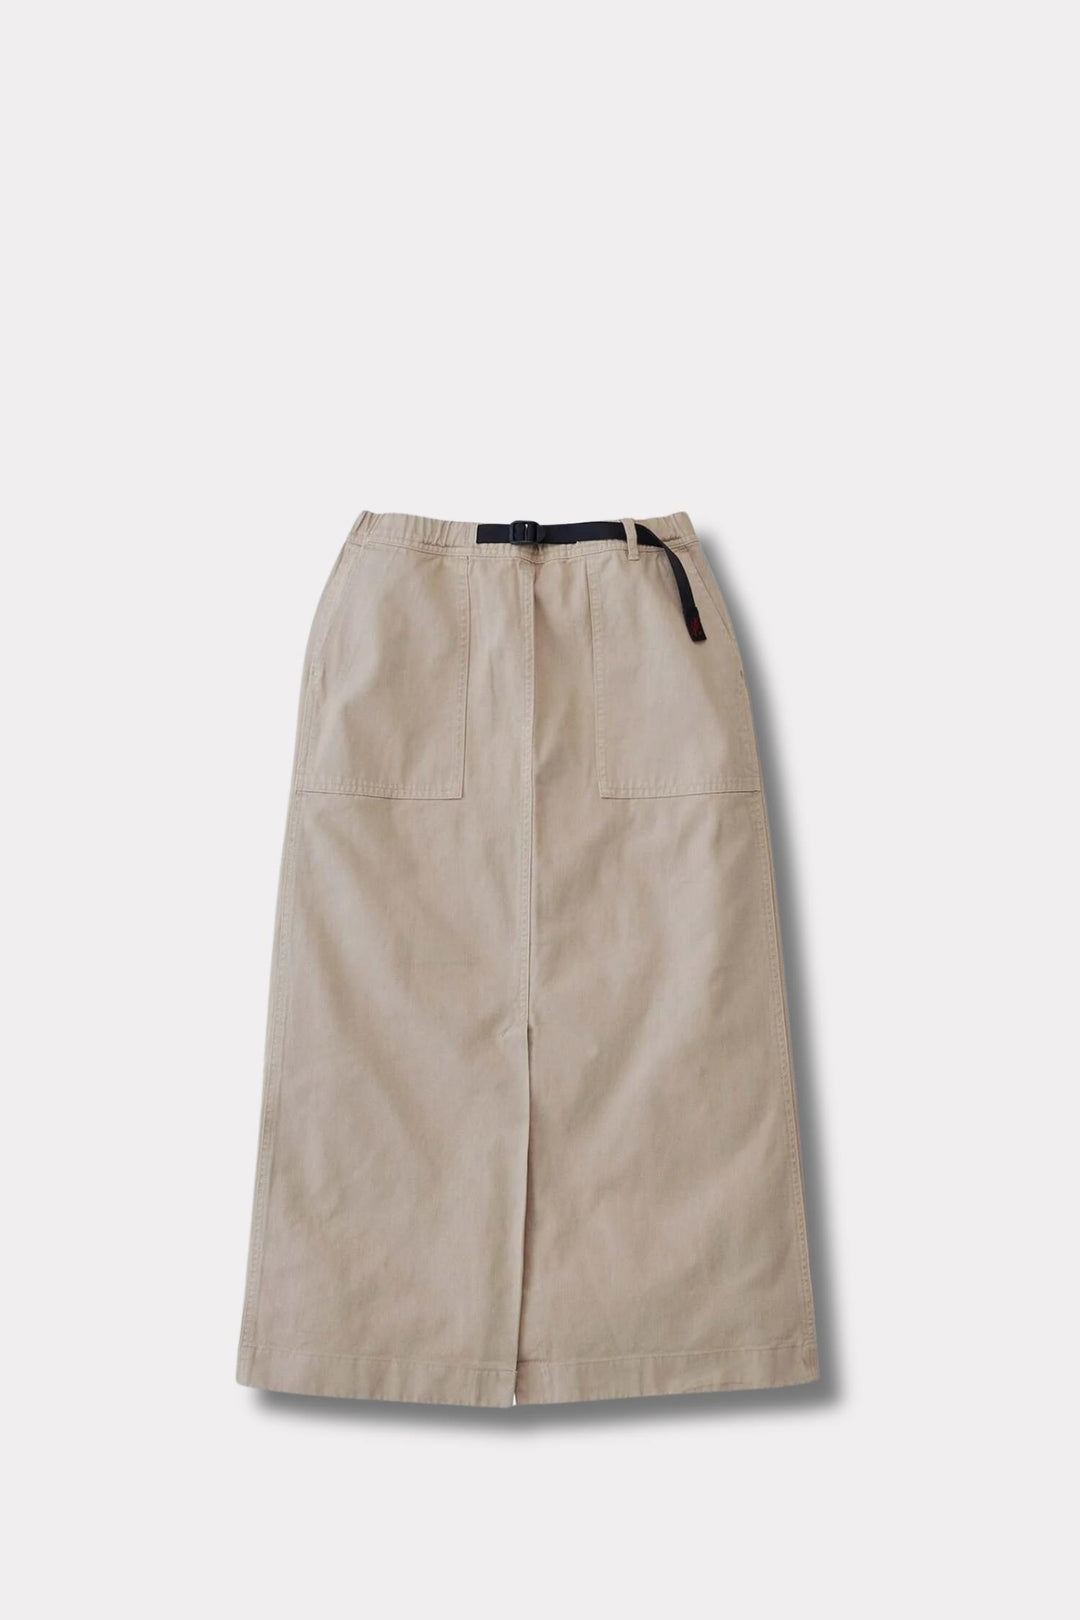 Long Baker Skirt- US Chino